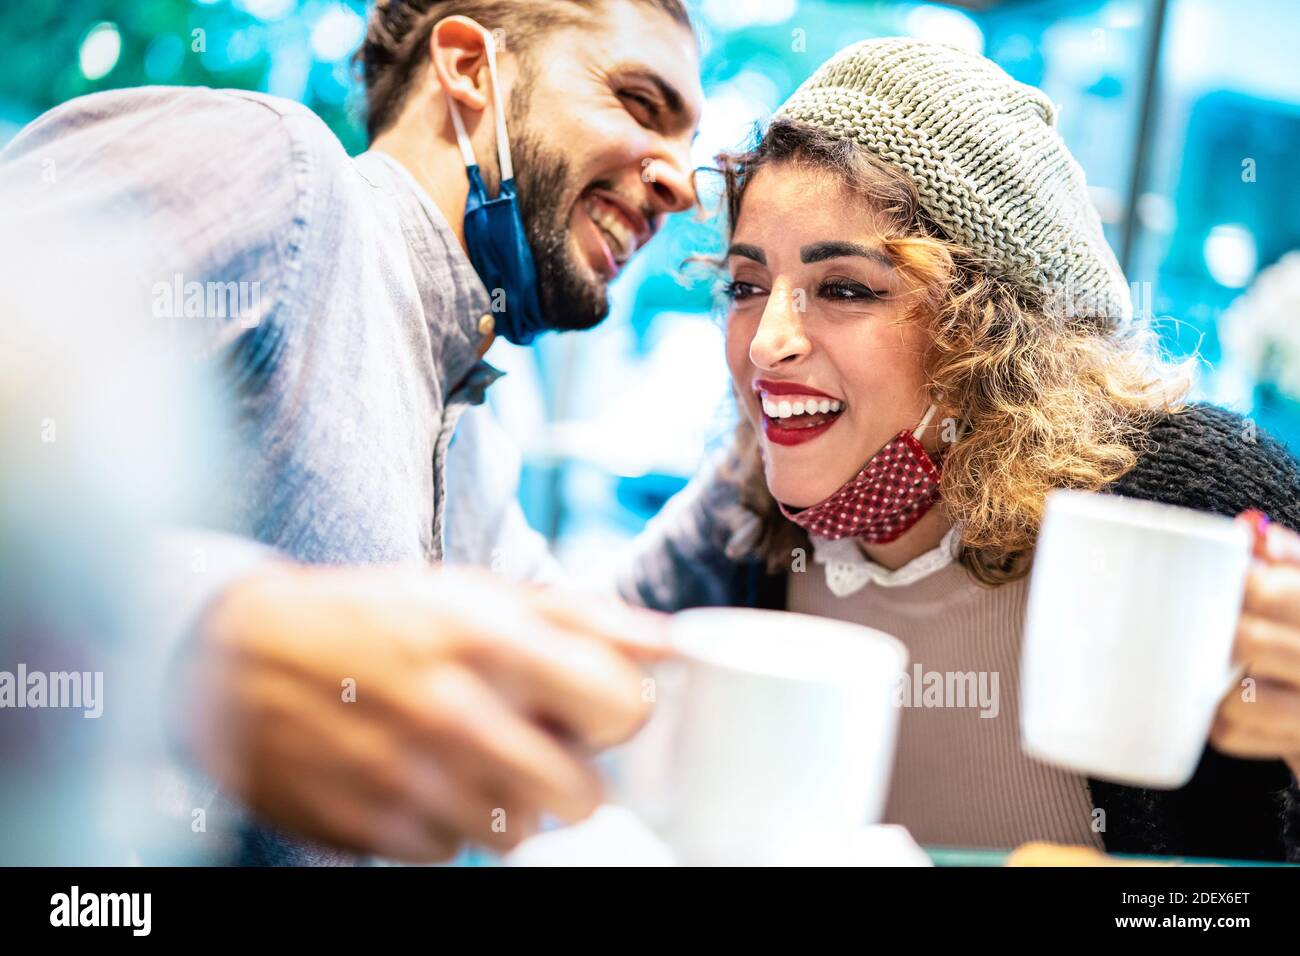 Glückliches Paar mit Gesichtsmaske Spaß zusammen an der Bar Cafeteria - Neue normale Lifestyle-Konzept mit jungen Menschen reden Und amerikanischen Kaffee trinken Stockfoto